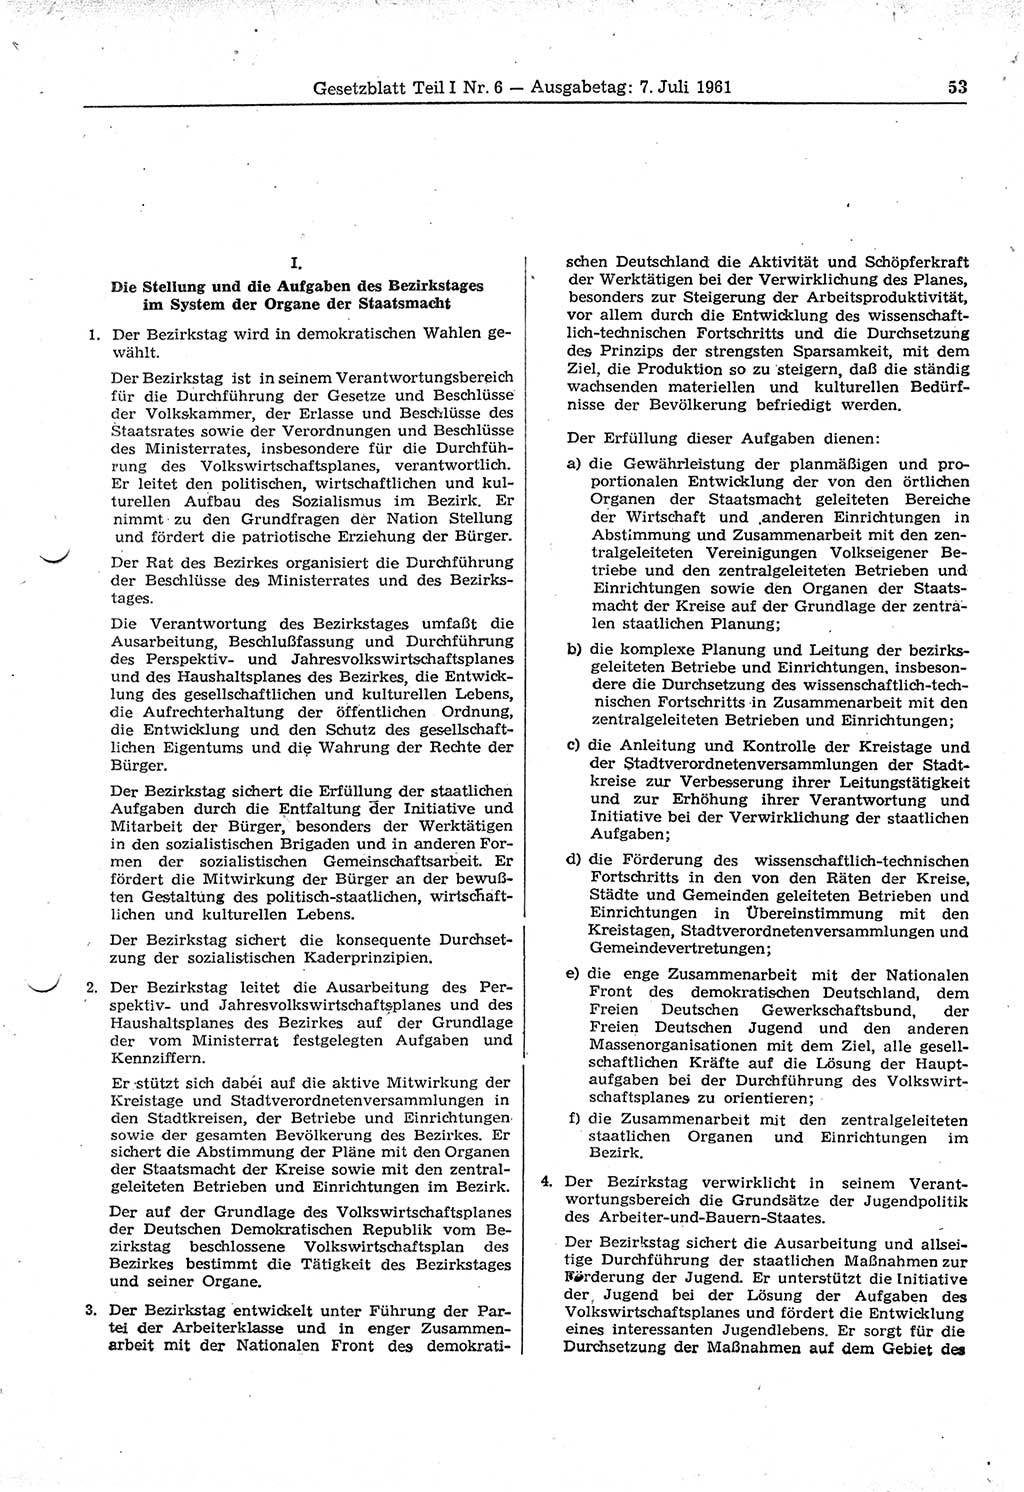 Gesetzblatt (GBl.) der Deutschen Demokratischen Republik (DDR) Teil Ⅰ 1961, Seite 53 (GBl. DDR Ⅰ 1961, S. 53)